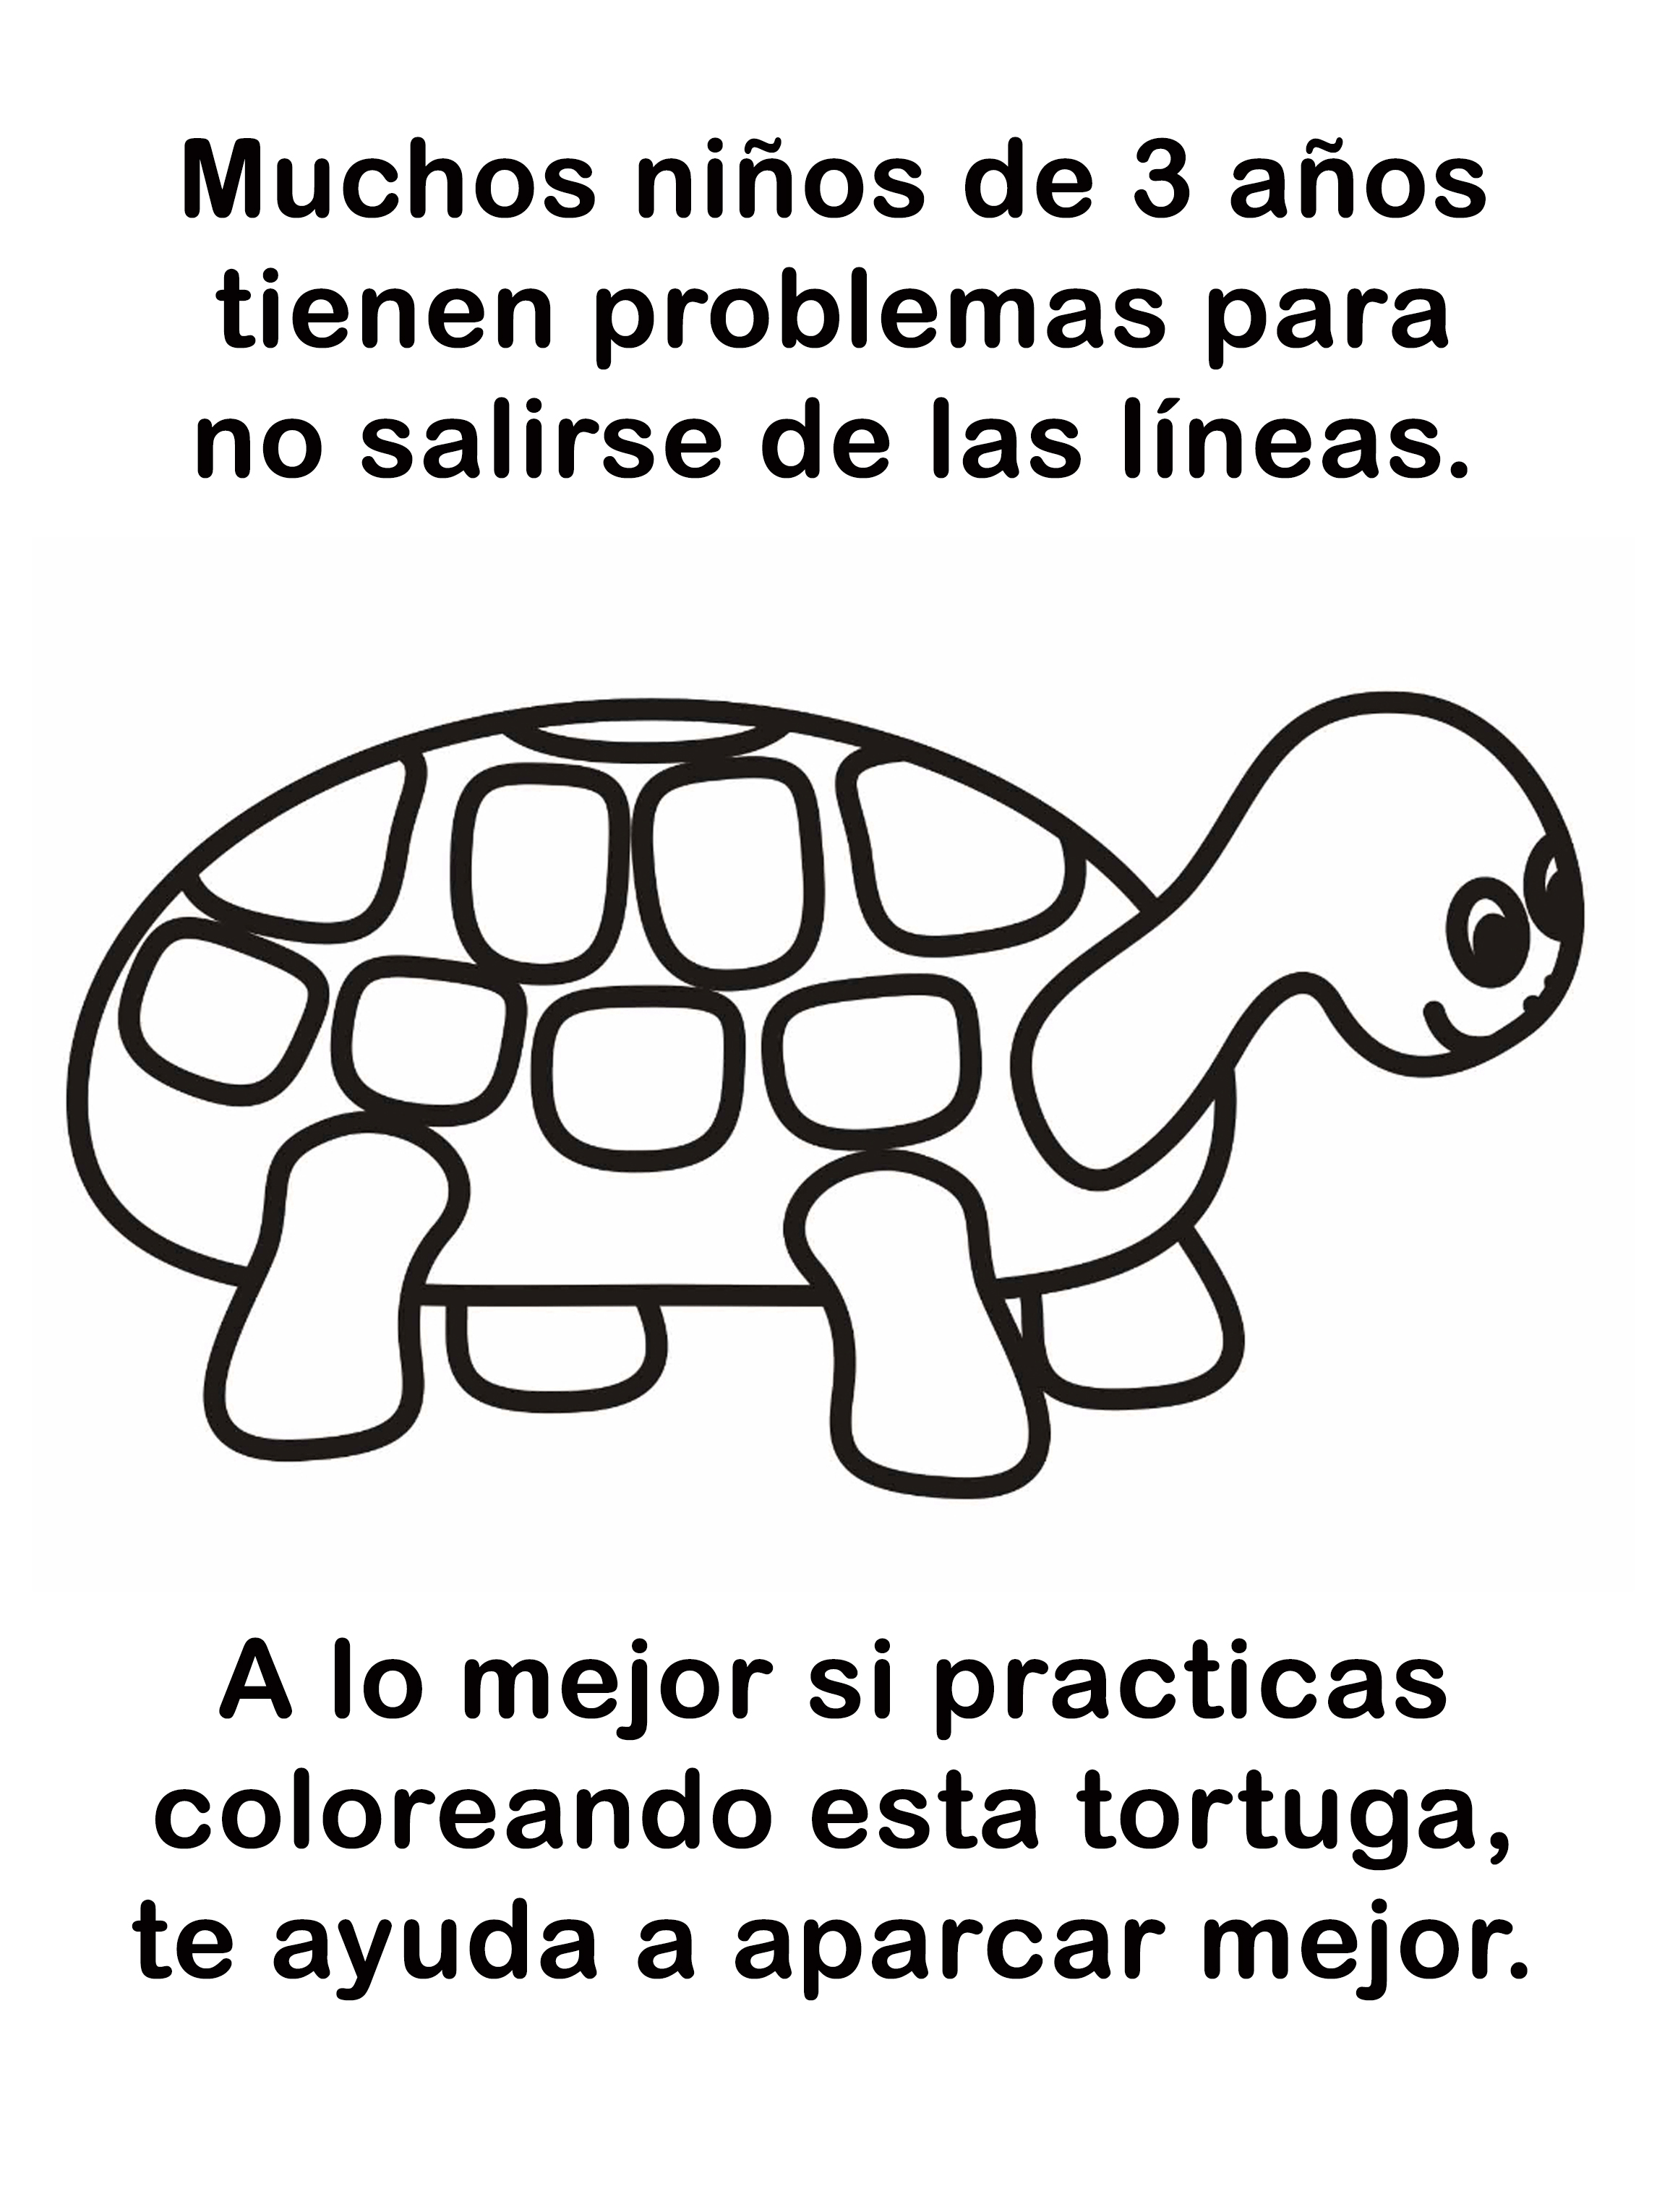 tortuga-colorear-aparcar-mal (2)